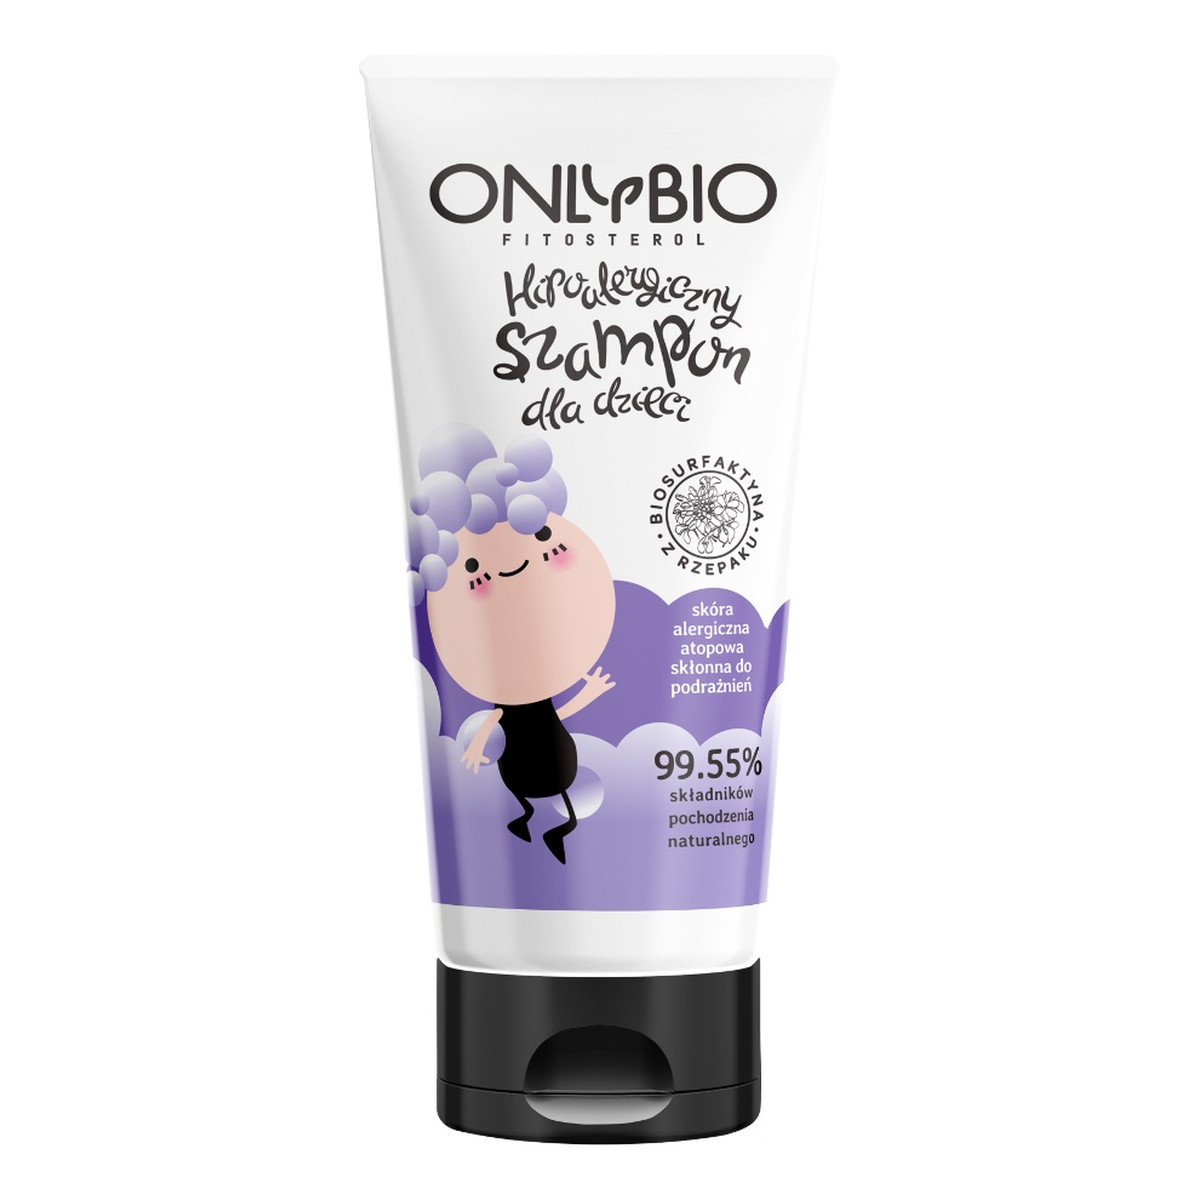 OnlyBio Fitosterol hipoalergiczny szampon dla dzieci dla skóry alergicznej i atopowej 200ml